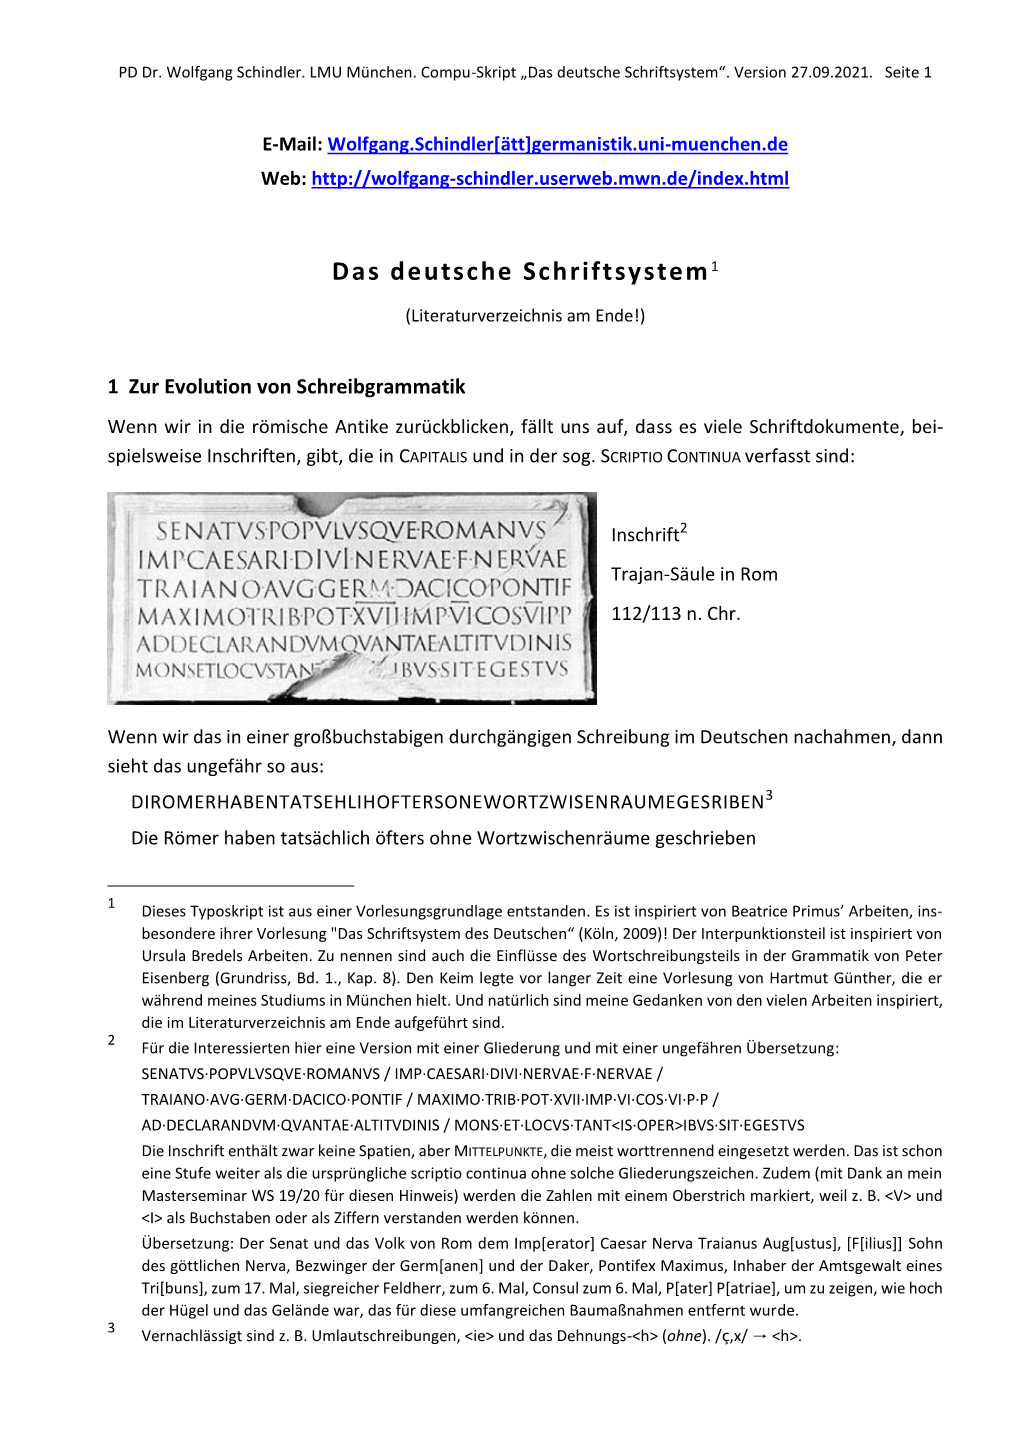 Das Deutsche Schriftsystem (Compu-Skript)